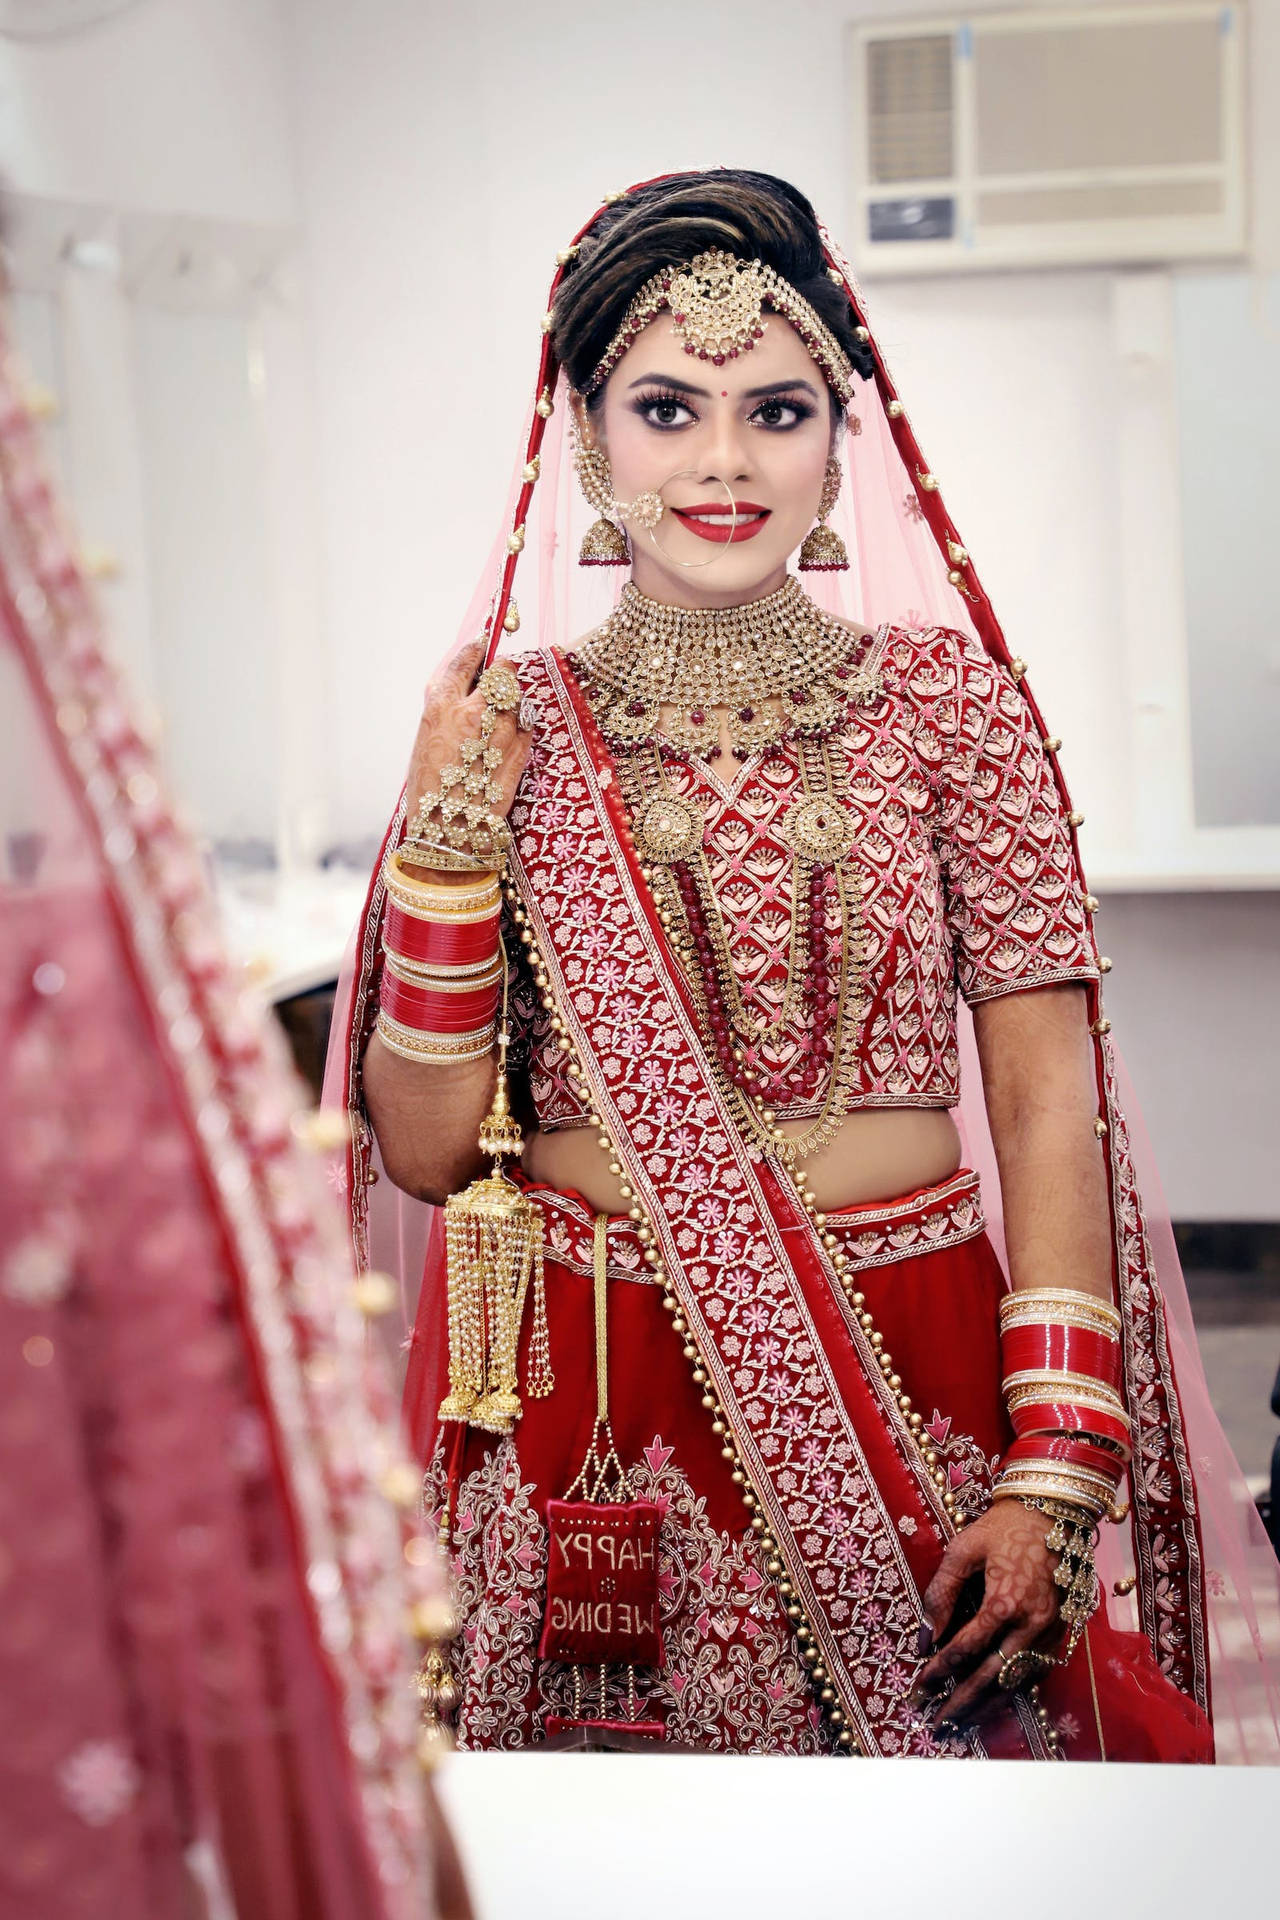 Woman Sari Dress Indian Wedding Background